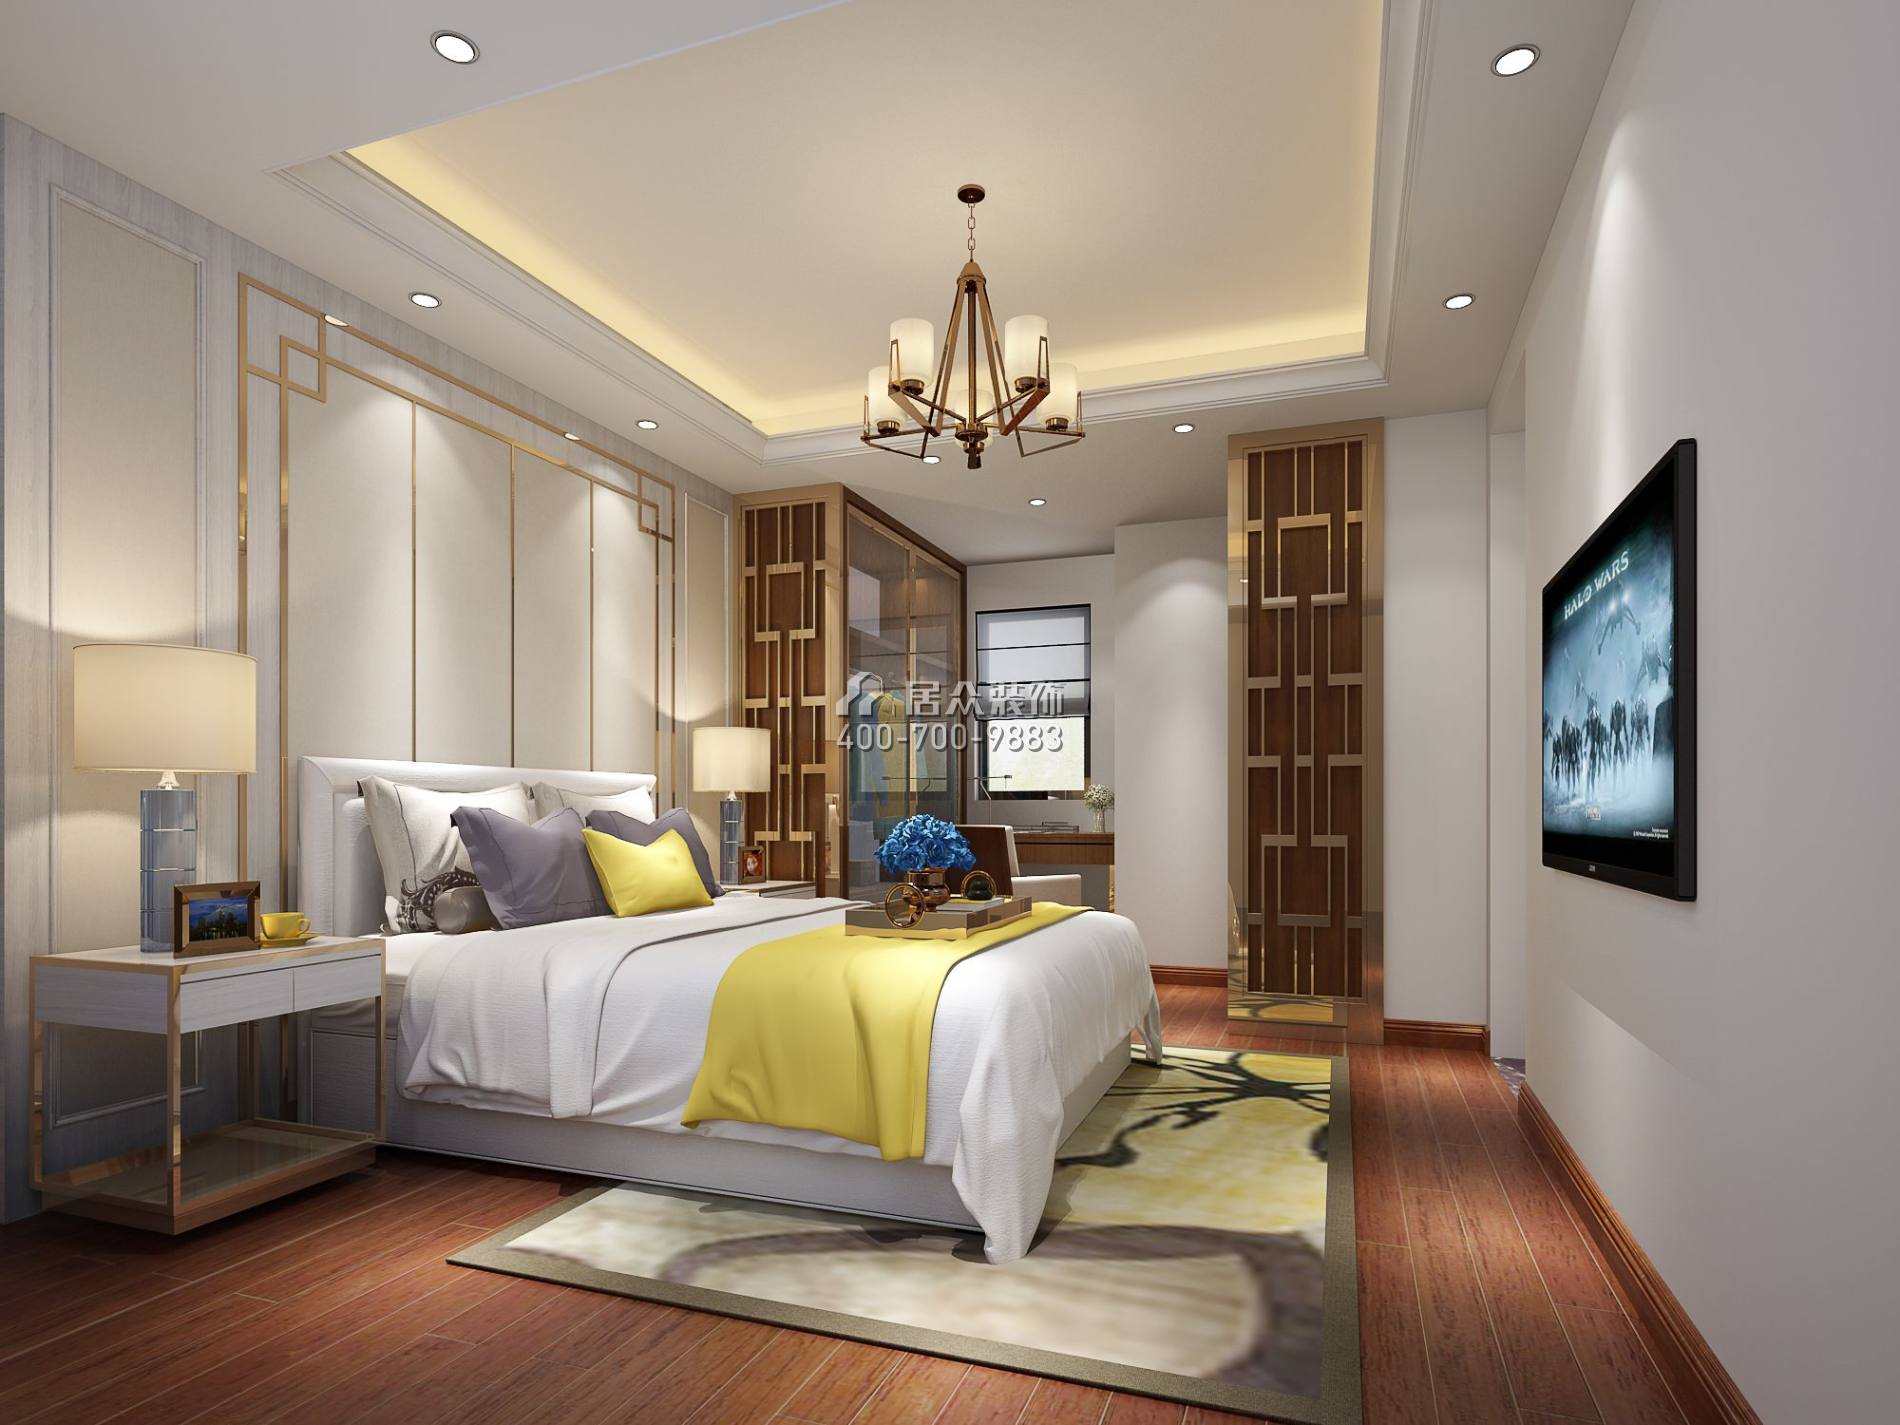 熙璟城109平方米中式風格平層戶型臥室裝修效果圖